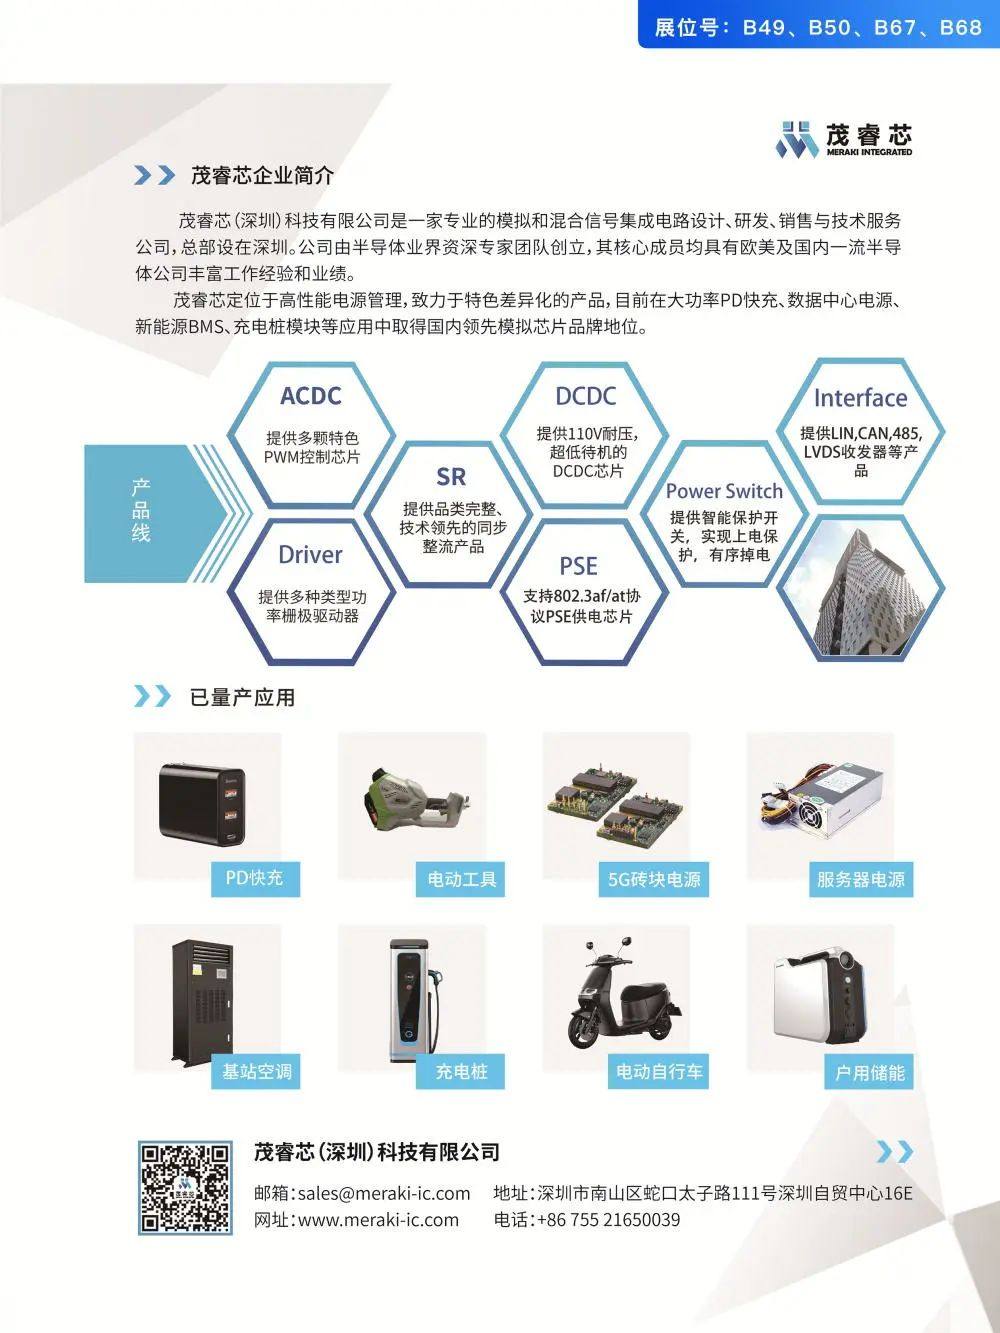 39家电源芯片企业参加2022亚洲充电展-亚洲充电展